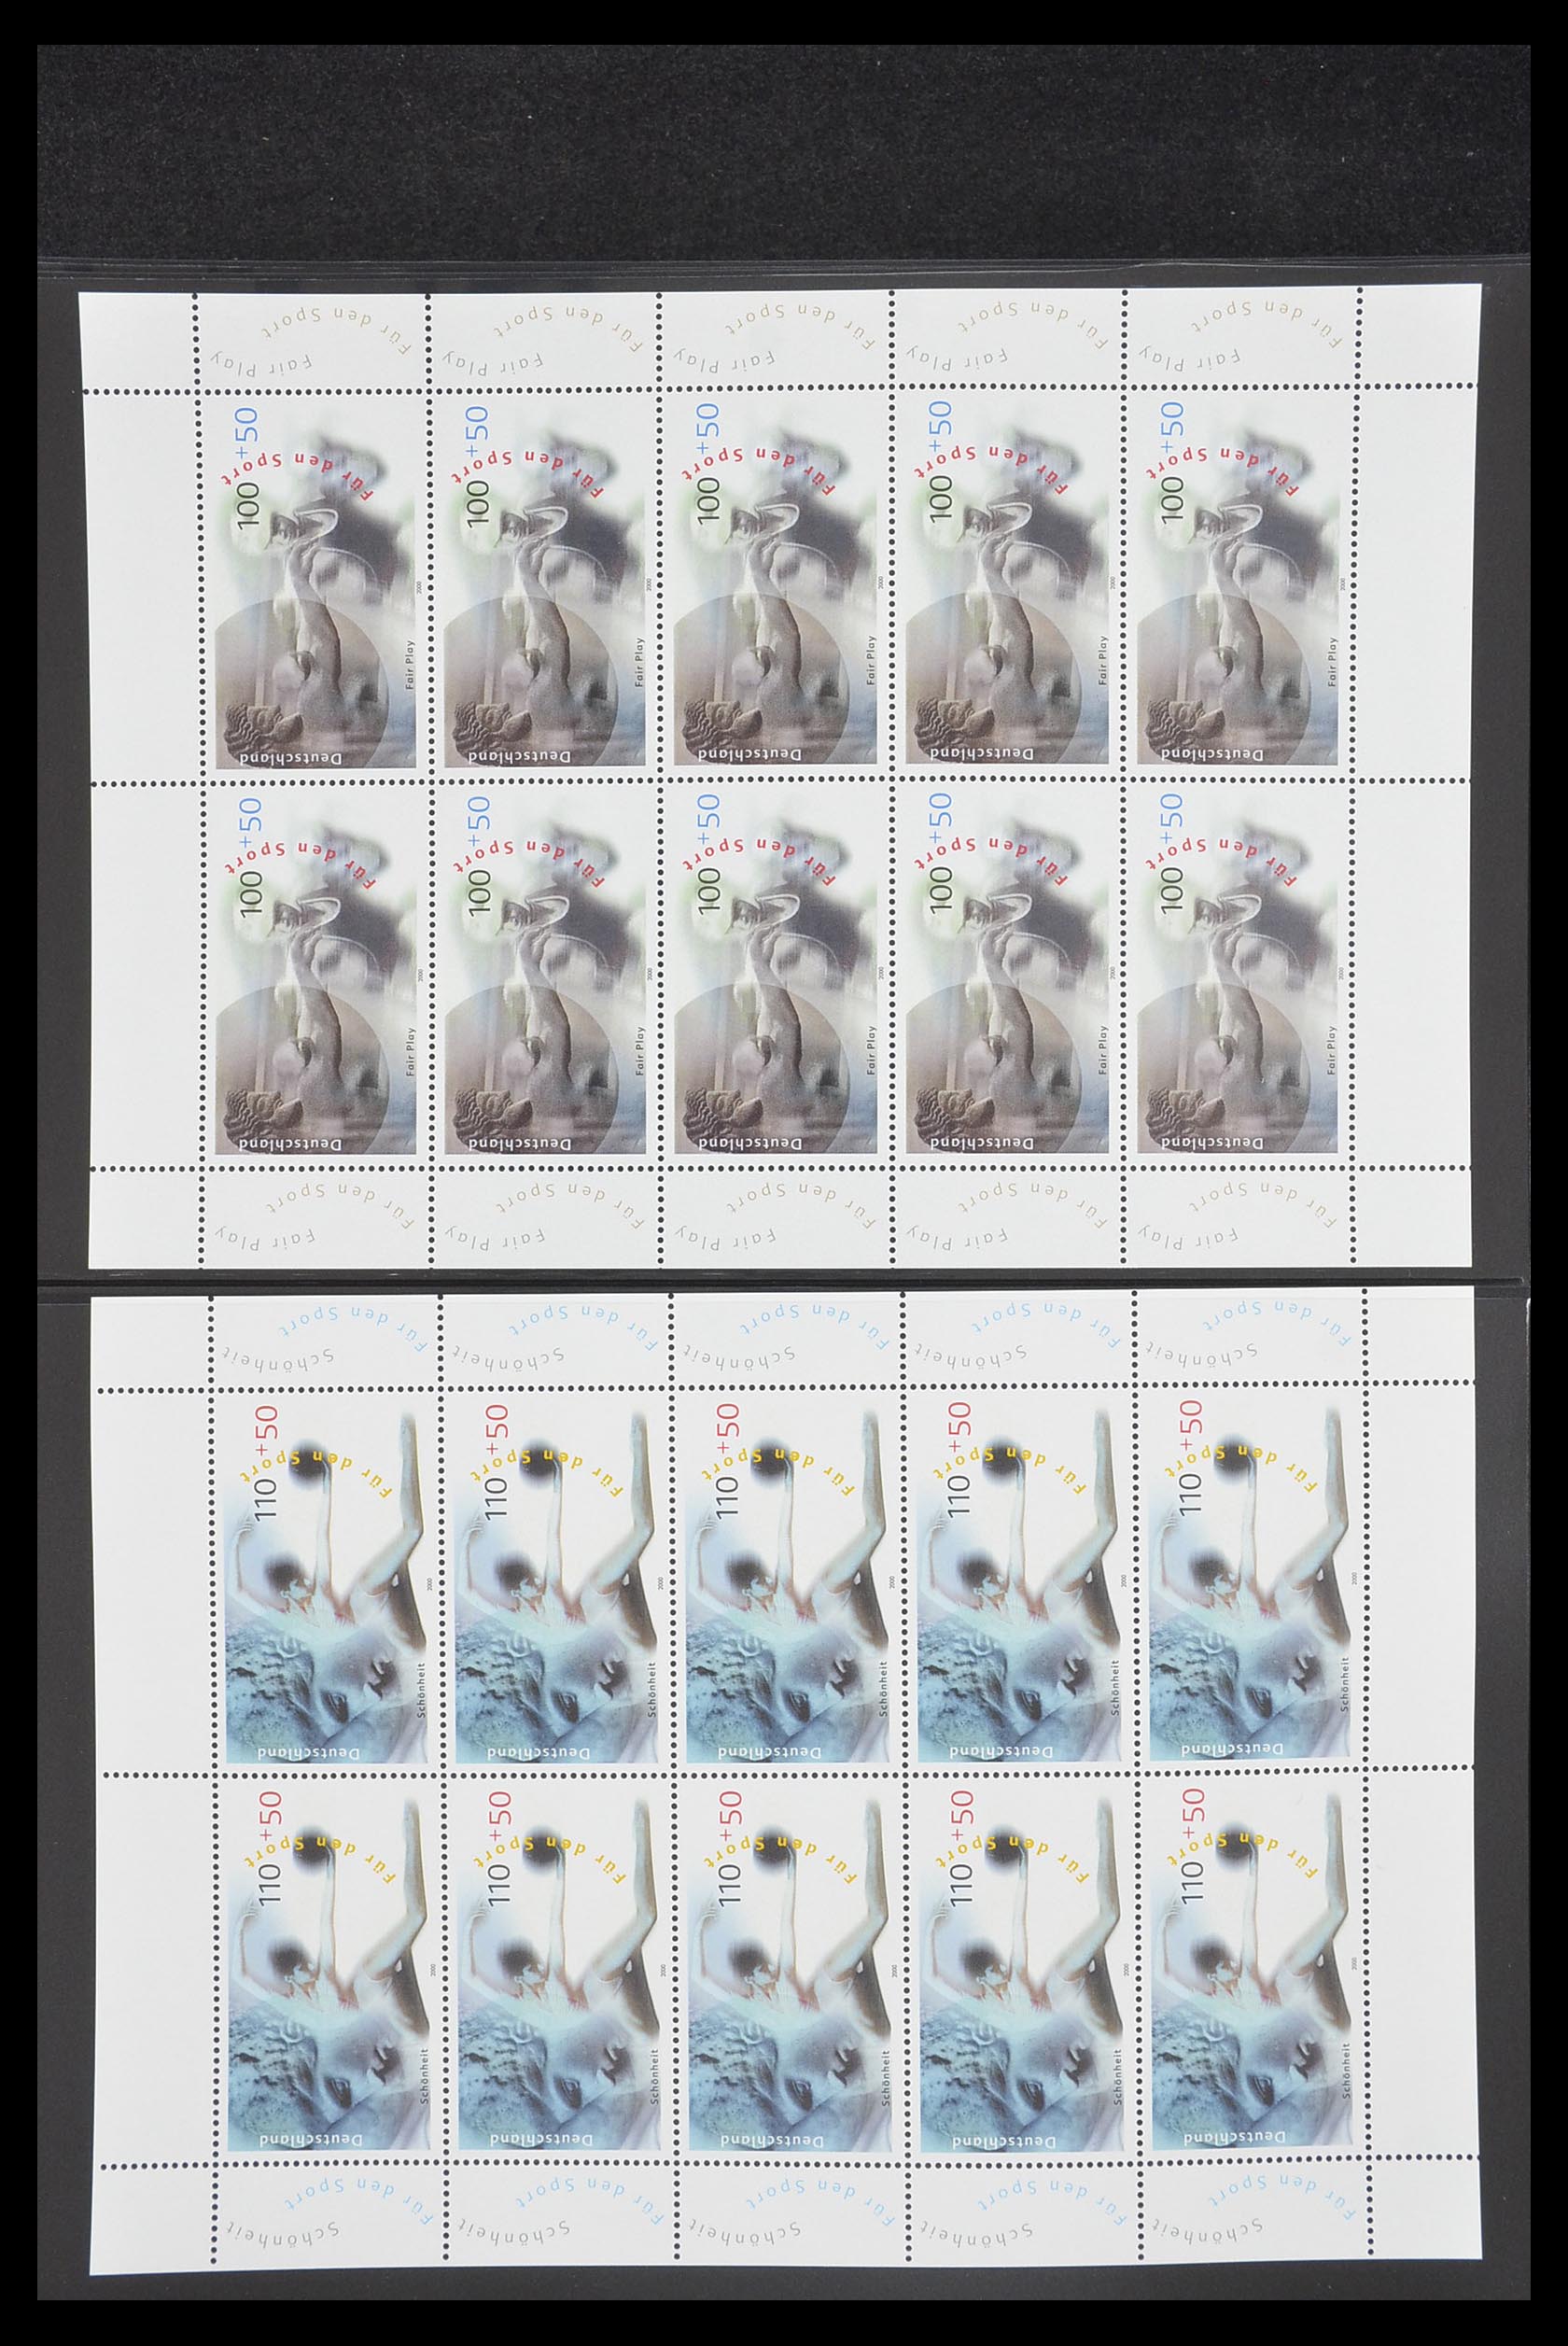 33936 149 - Stamp collection 33936 Bundespost kleinbogen 1994-2000.